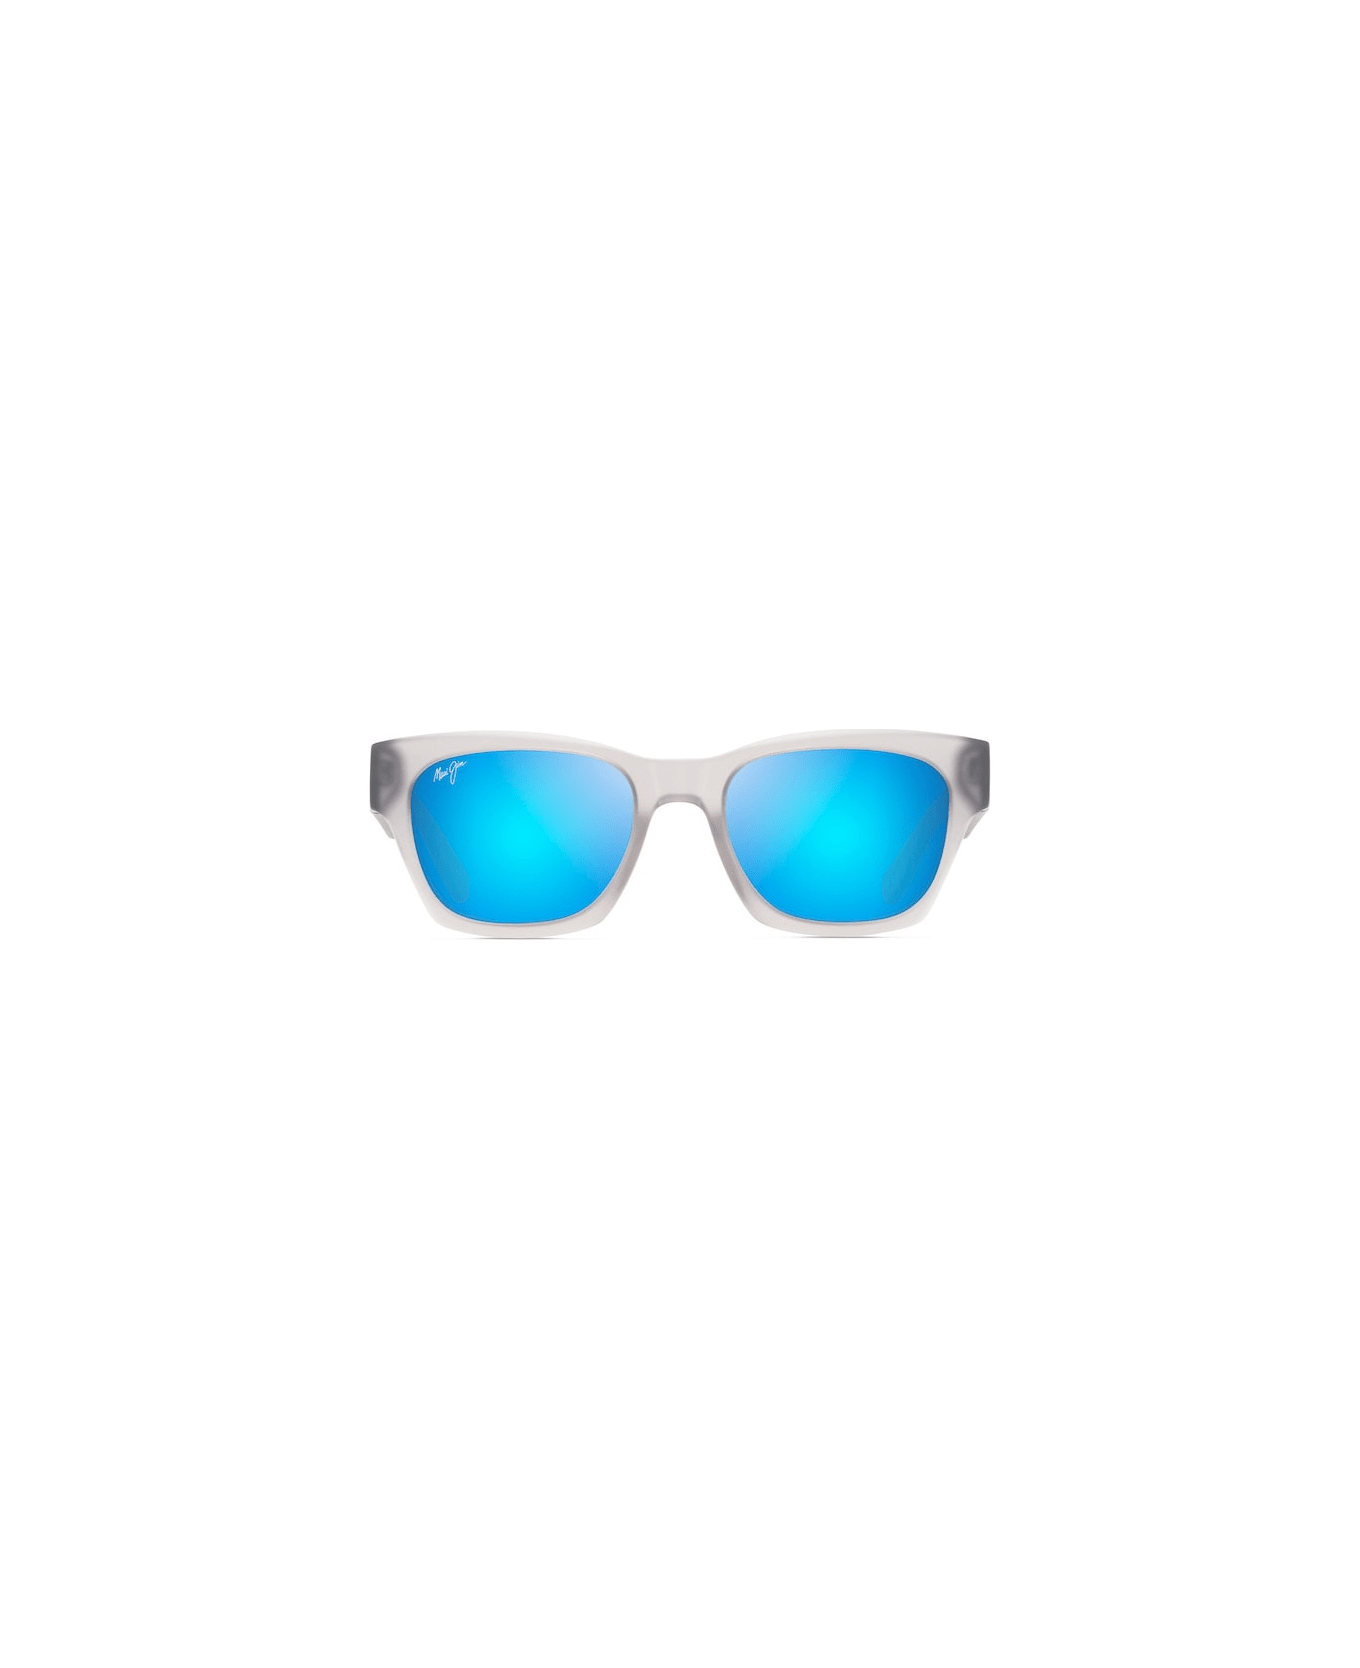 Maui Jim Valley Isle STG Sunglasses